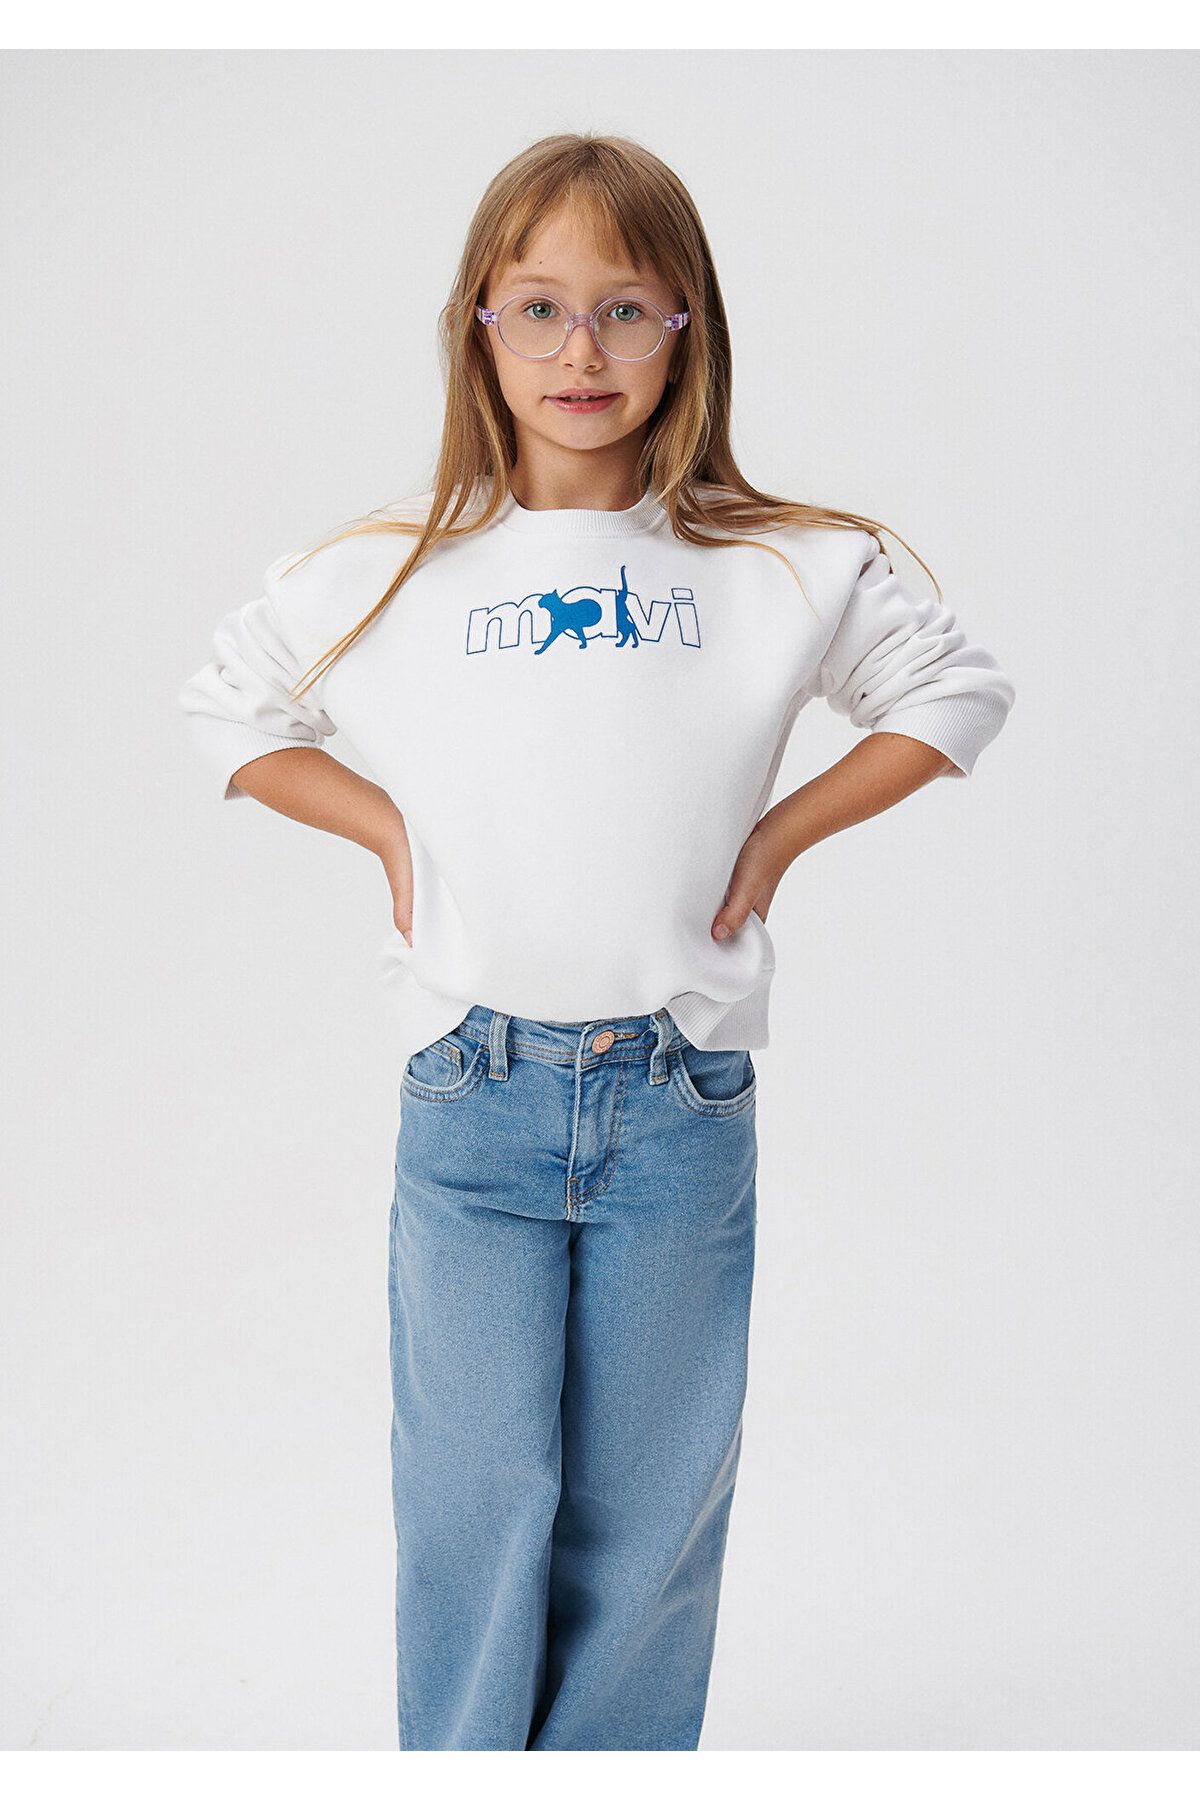 Mavi Logo Kedi Baskılı Beyaz Sweatshirt 7s10001-620